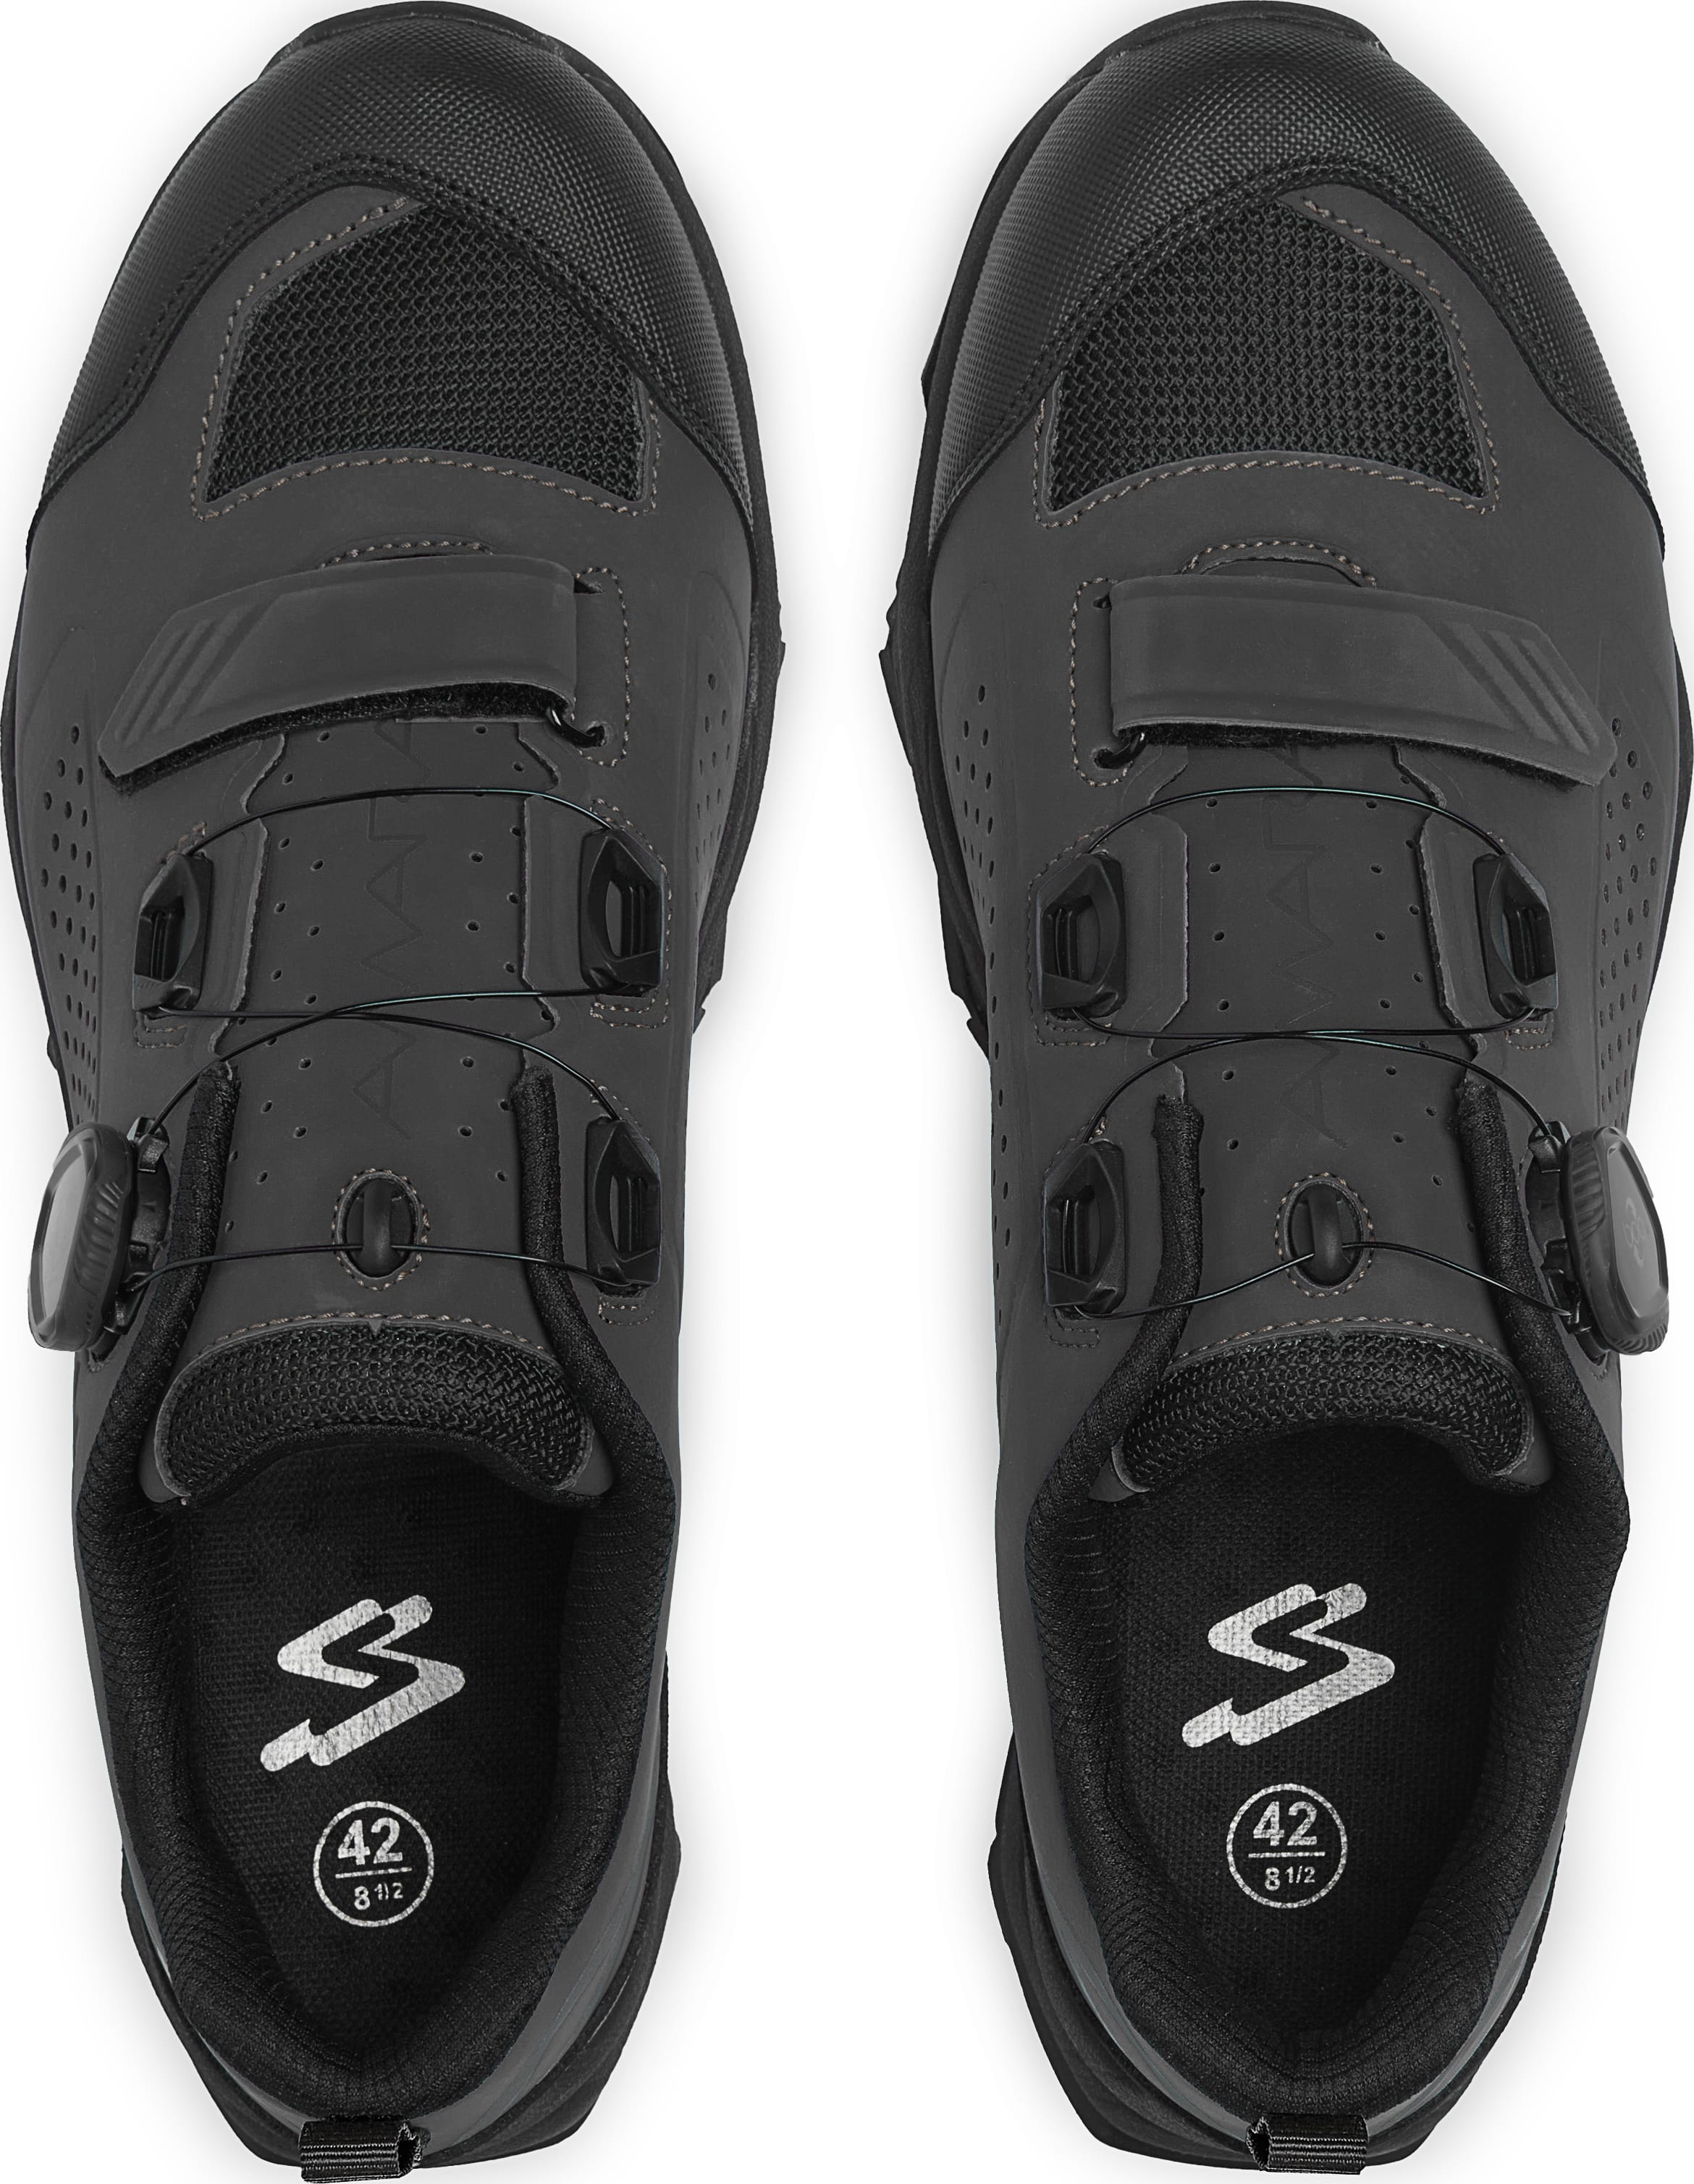 Обувь Spiuk Amara M2V MTB размер UK 6,5 (39 248мм) черные фото 2